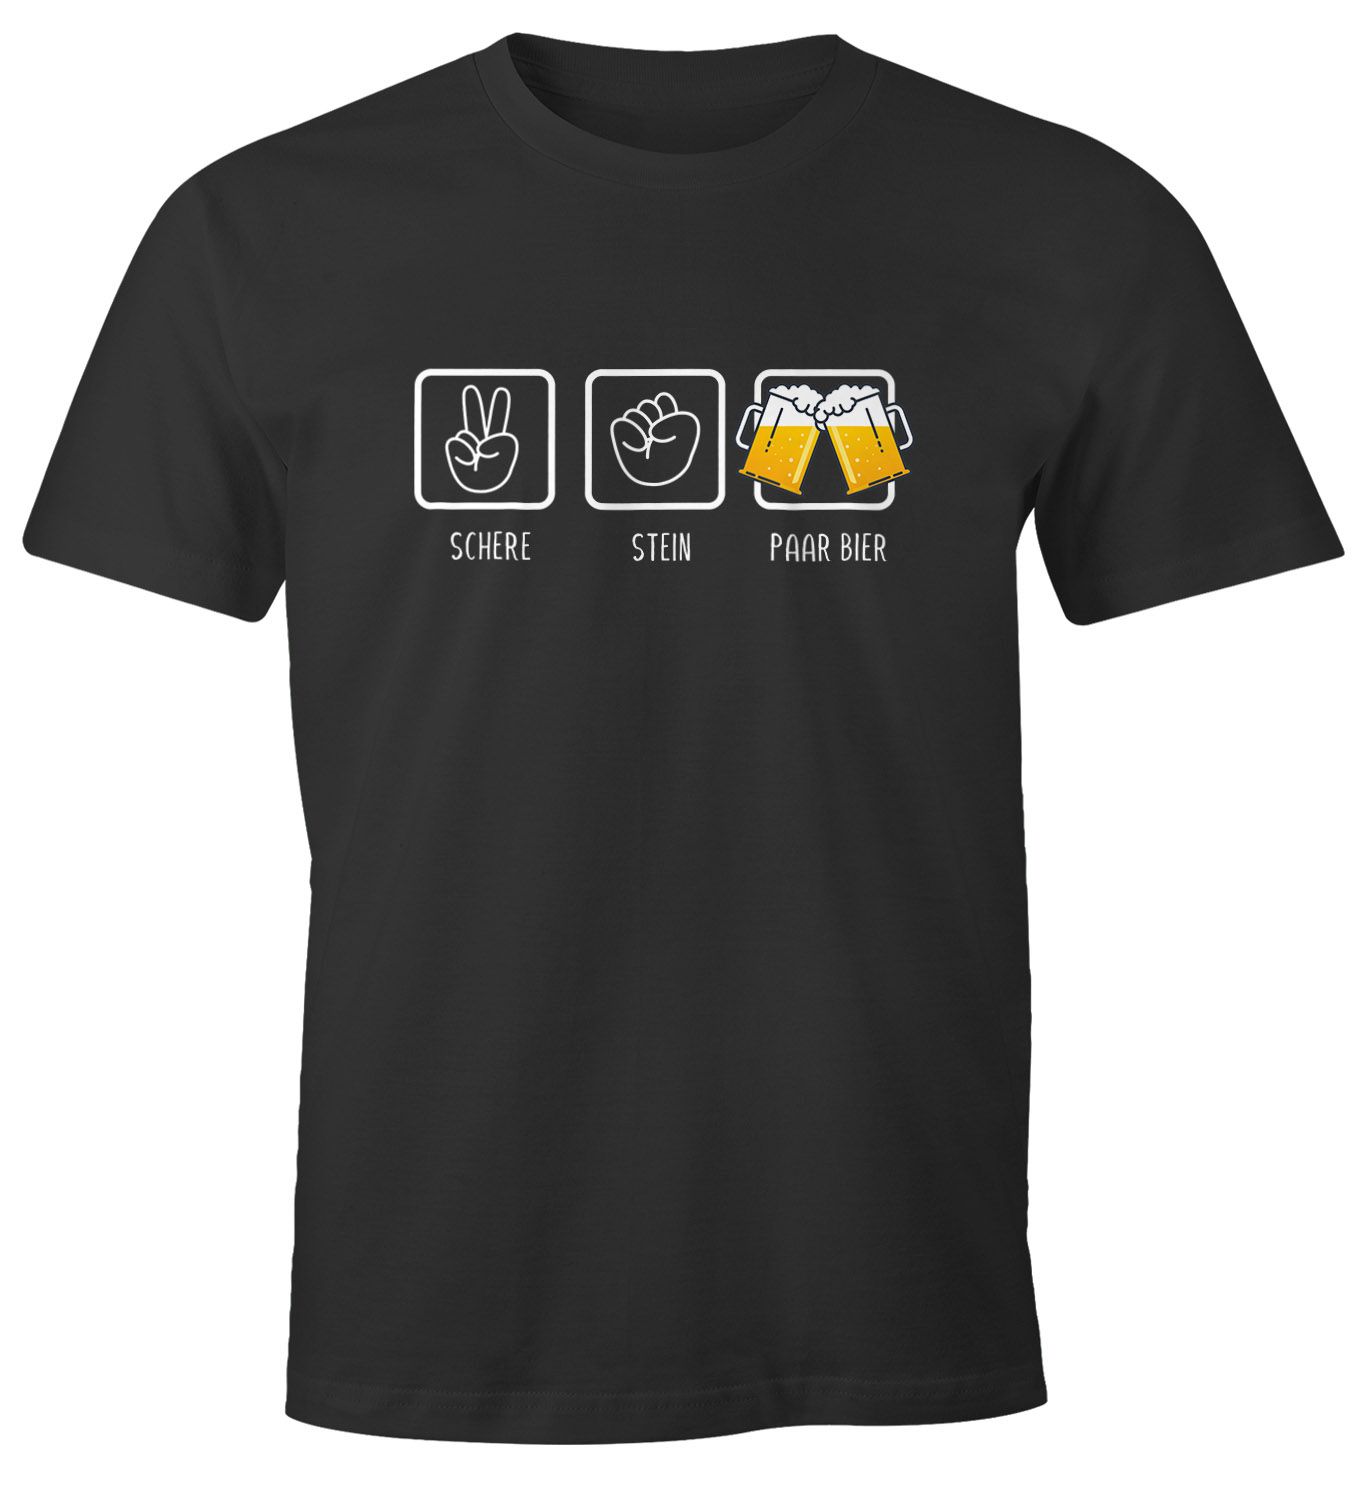 Herren T-Shirt Schere, Stein, paar Bier lustiges Trink Shirt Saufen Bier Party Moonworks®